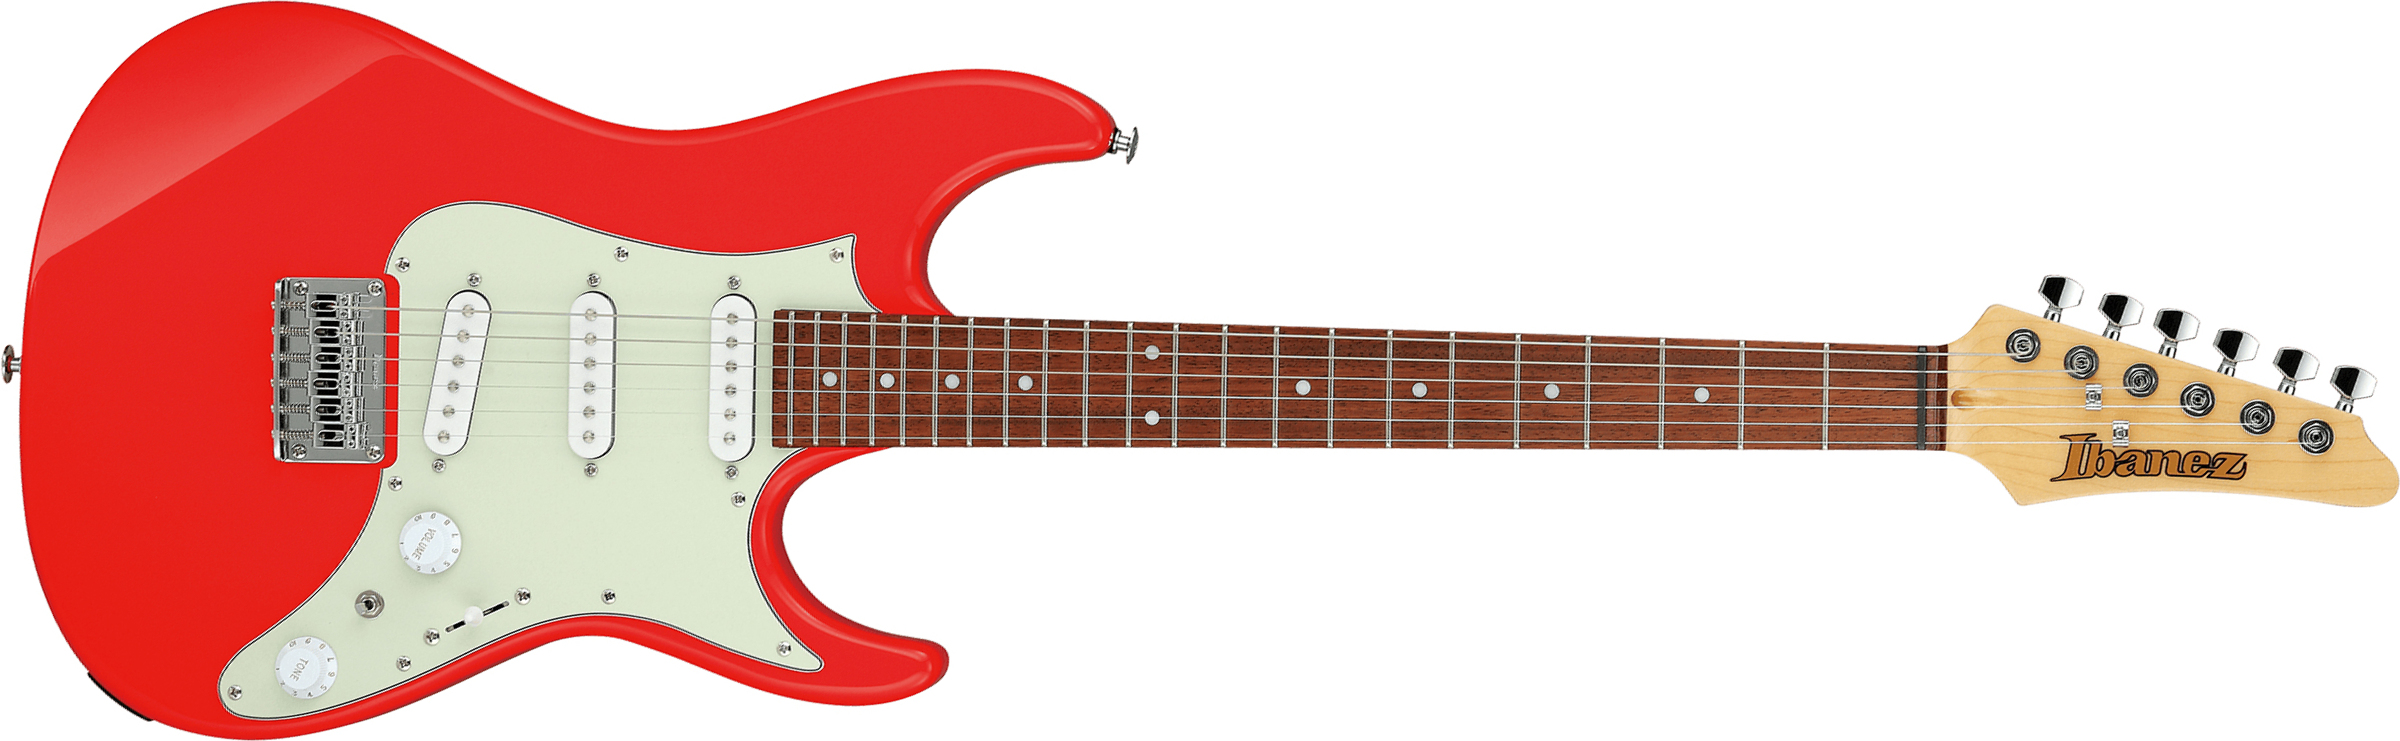 Ibanez Azes31 Vm Standard 3s Trem Jat - Vermillion - Str shape electric guitar - Main picture